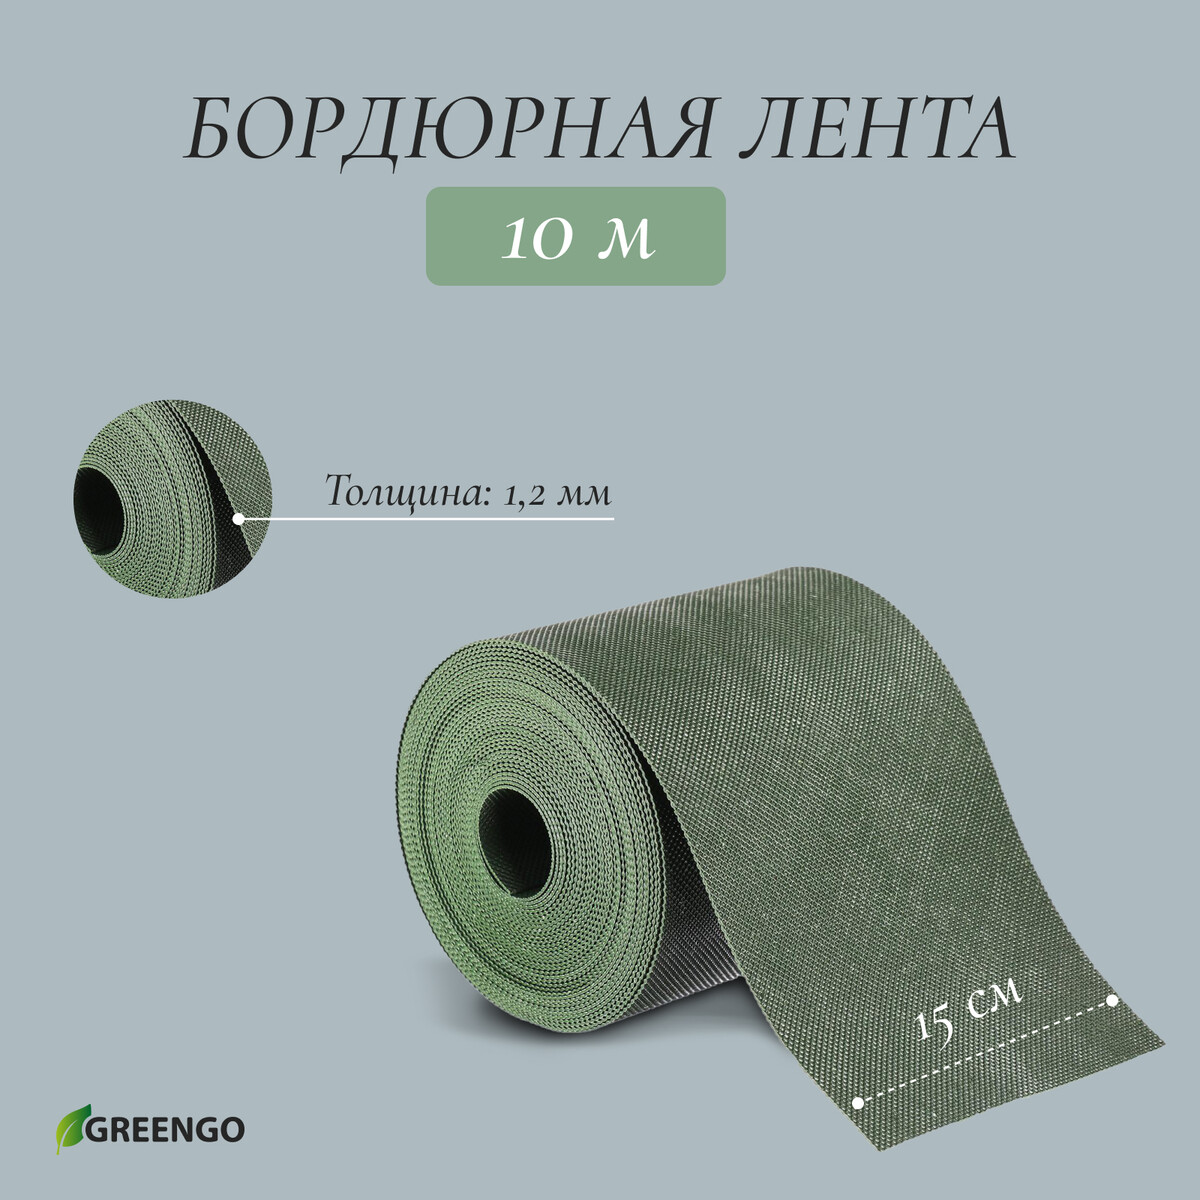 Лента бордюрная, 0.15 × 10 м, толщина 1.2 мм, пластиковая, зеленая, greengo лента бордюрная 0 1 × 10 м толщина 1 2 мм пластиковая коричневая greengo